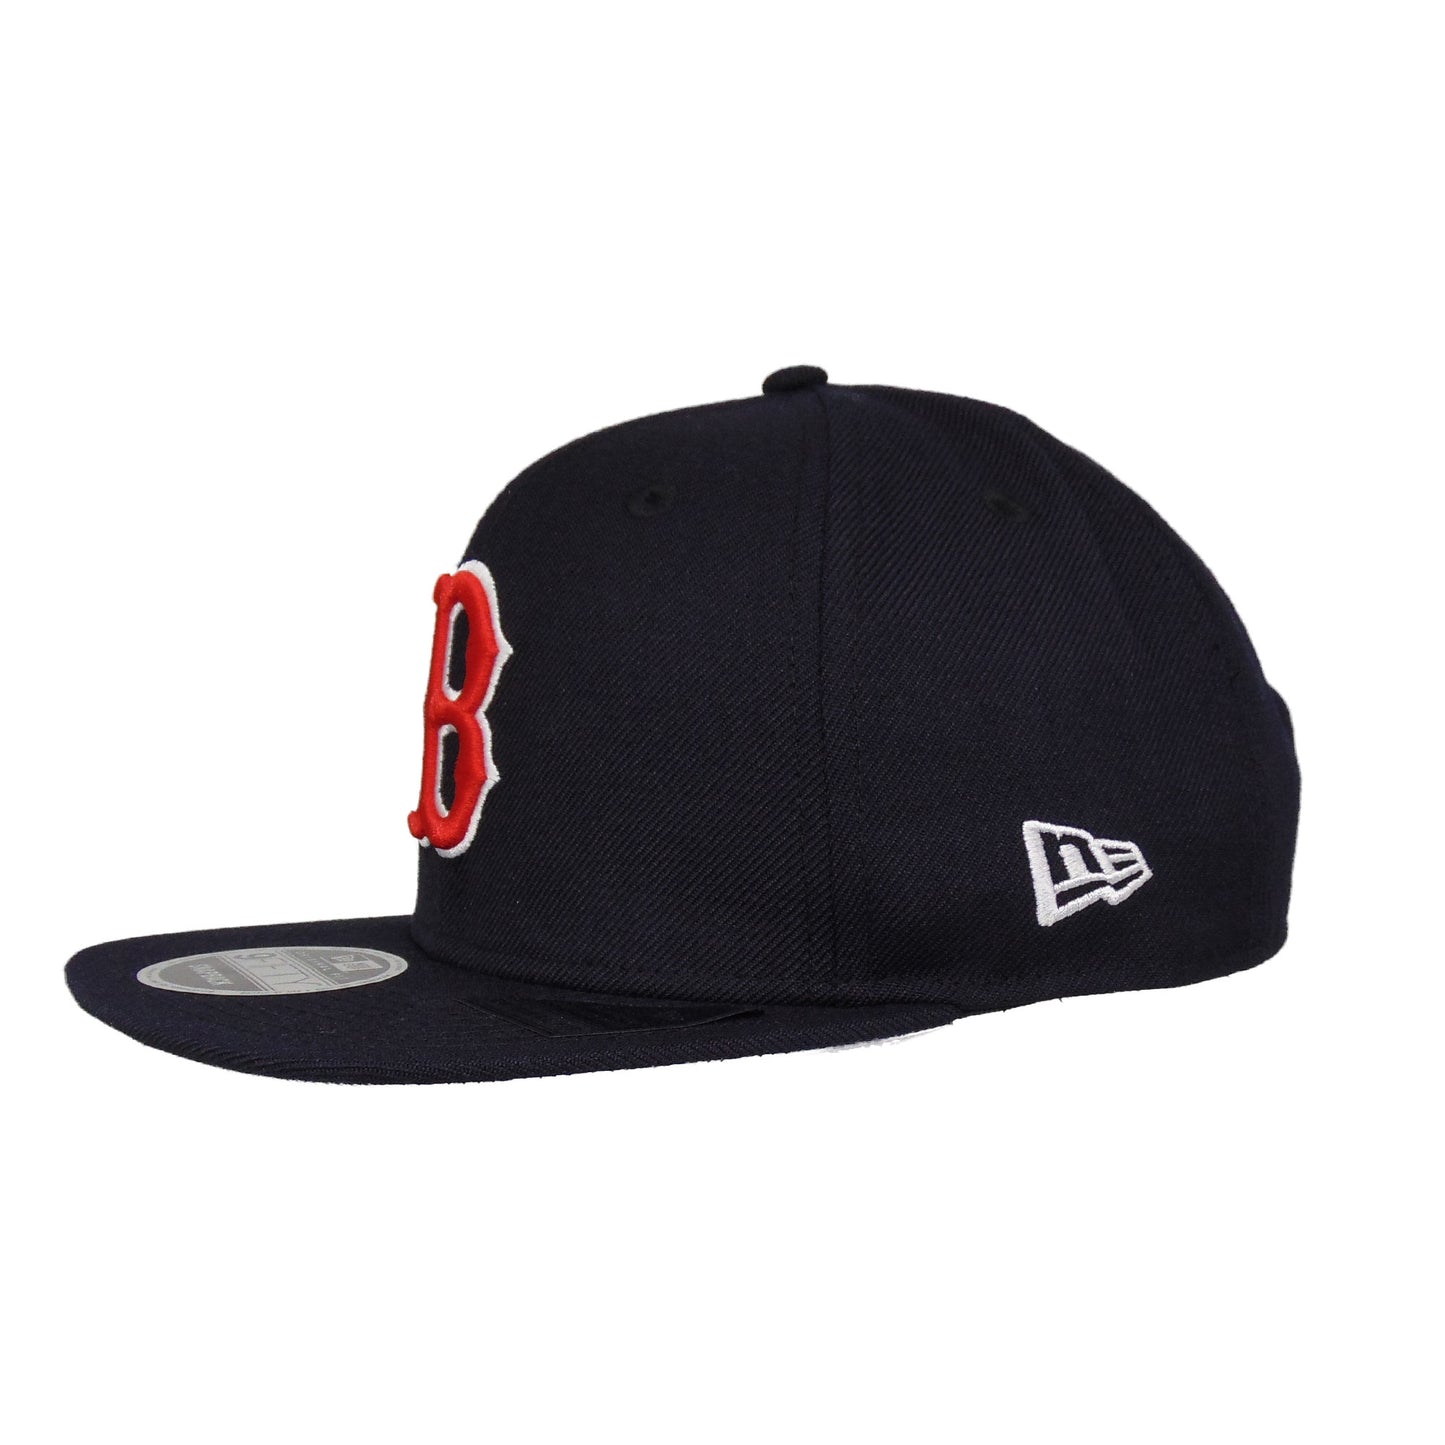 Boston Red Sox Jf Custom New Era 9FIFTY Snapback Cap Navy